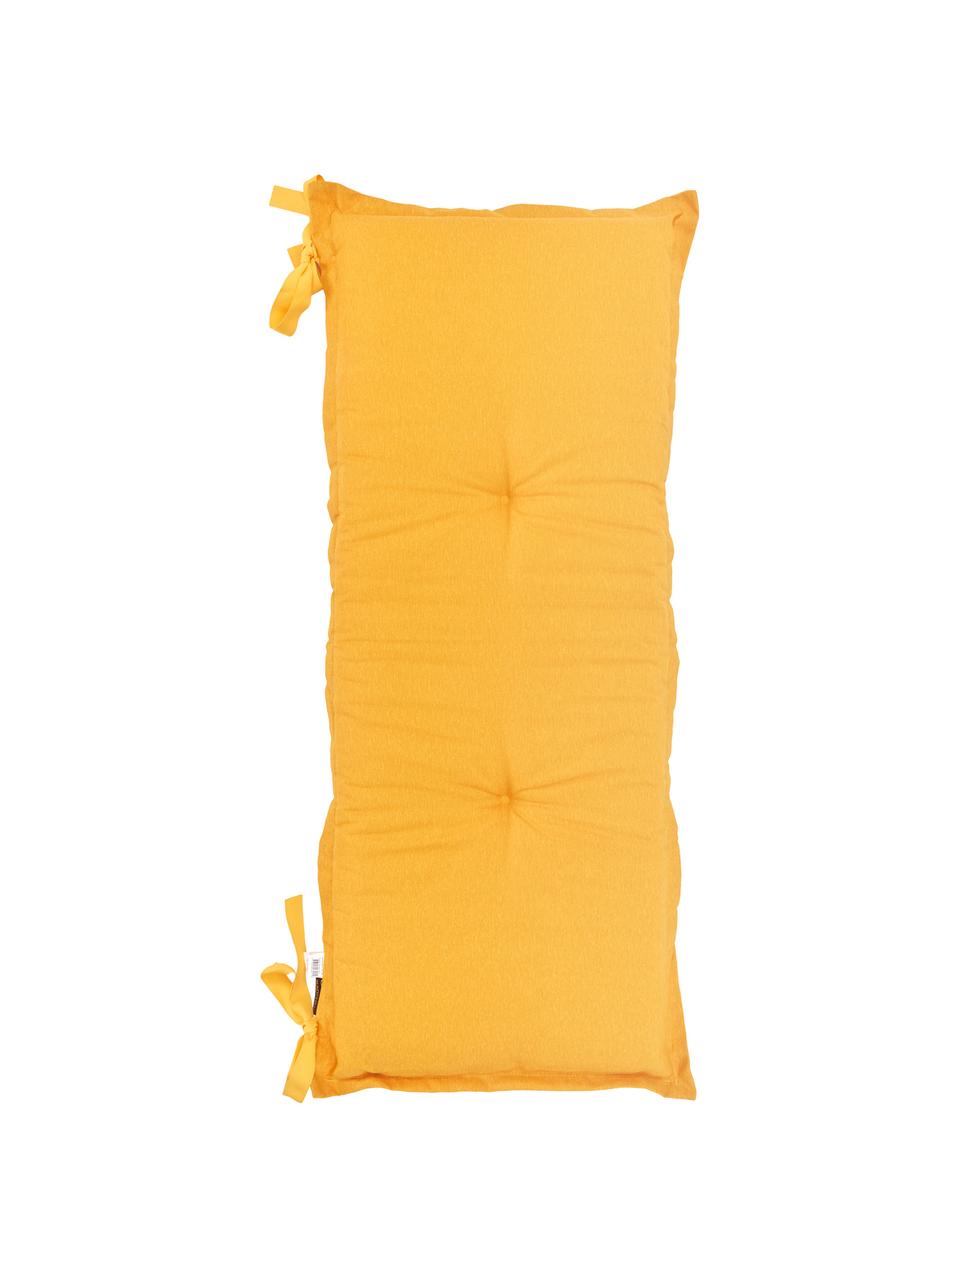 Cuscino sedia lungo giallo Panama, 50% cotone, 45% poliestere, 5% altre fibre, Giallo, Larg. 48 x Lung. 120 cm